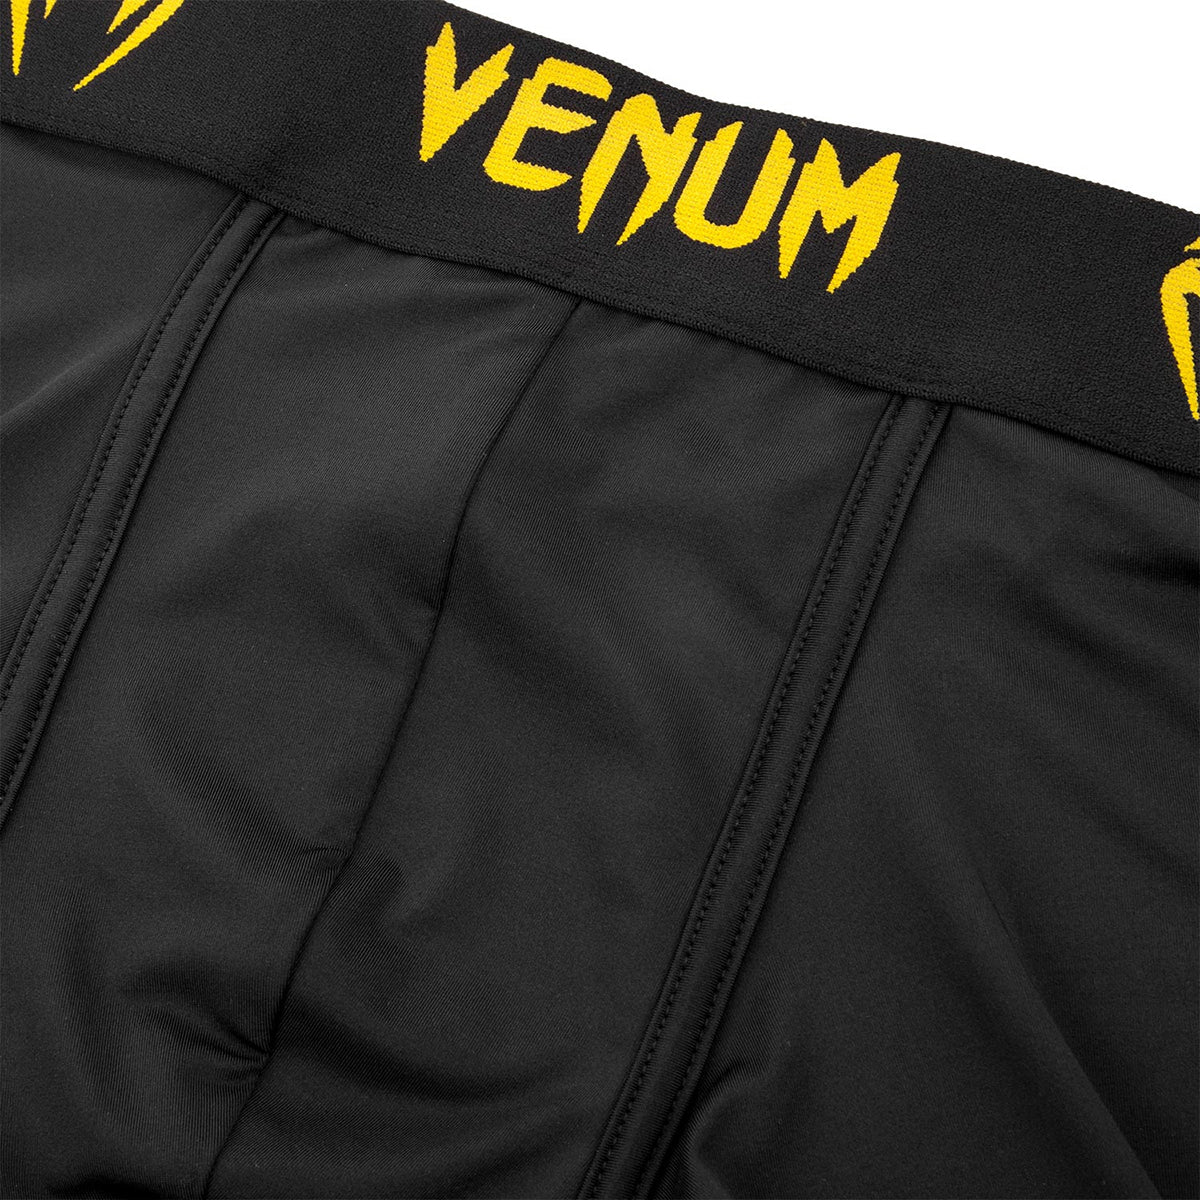 Venum Classic Boxer Shorts - Black/Yellow Venum